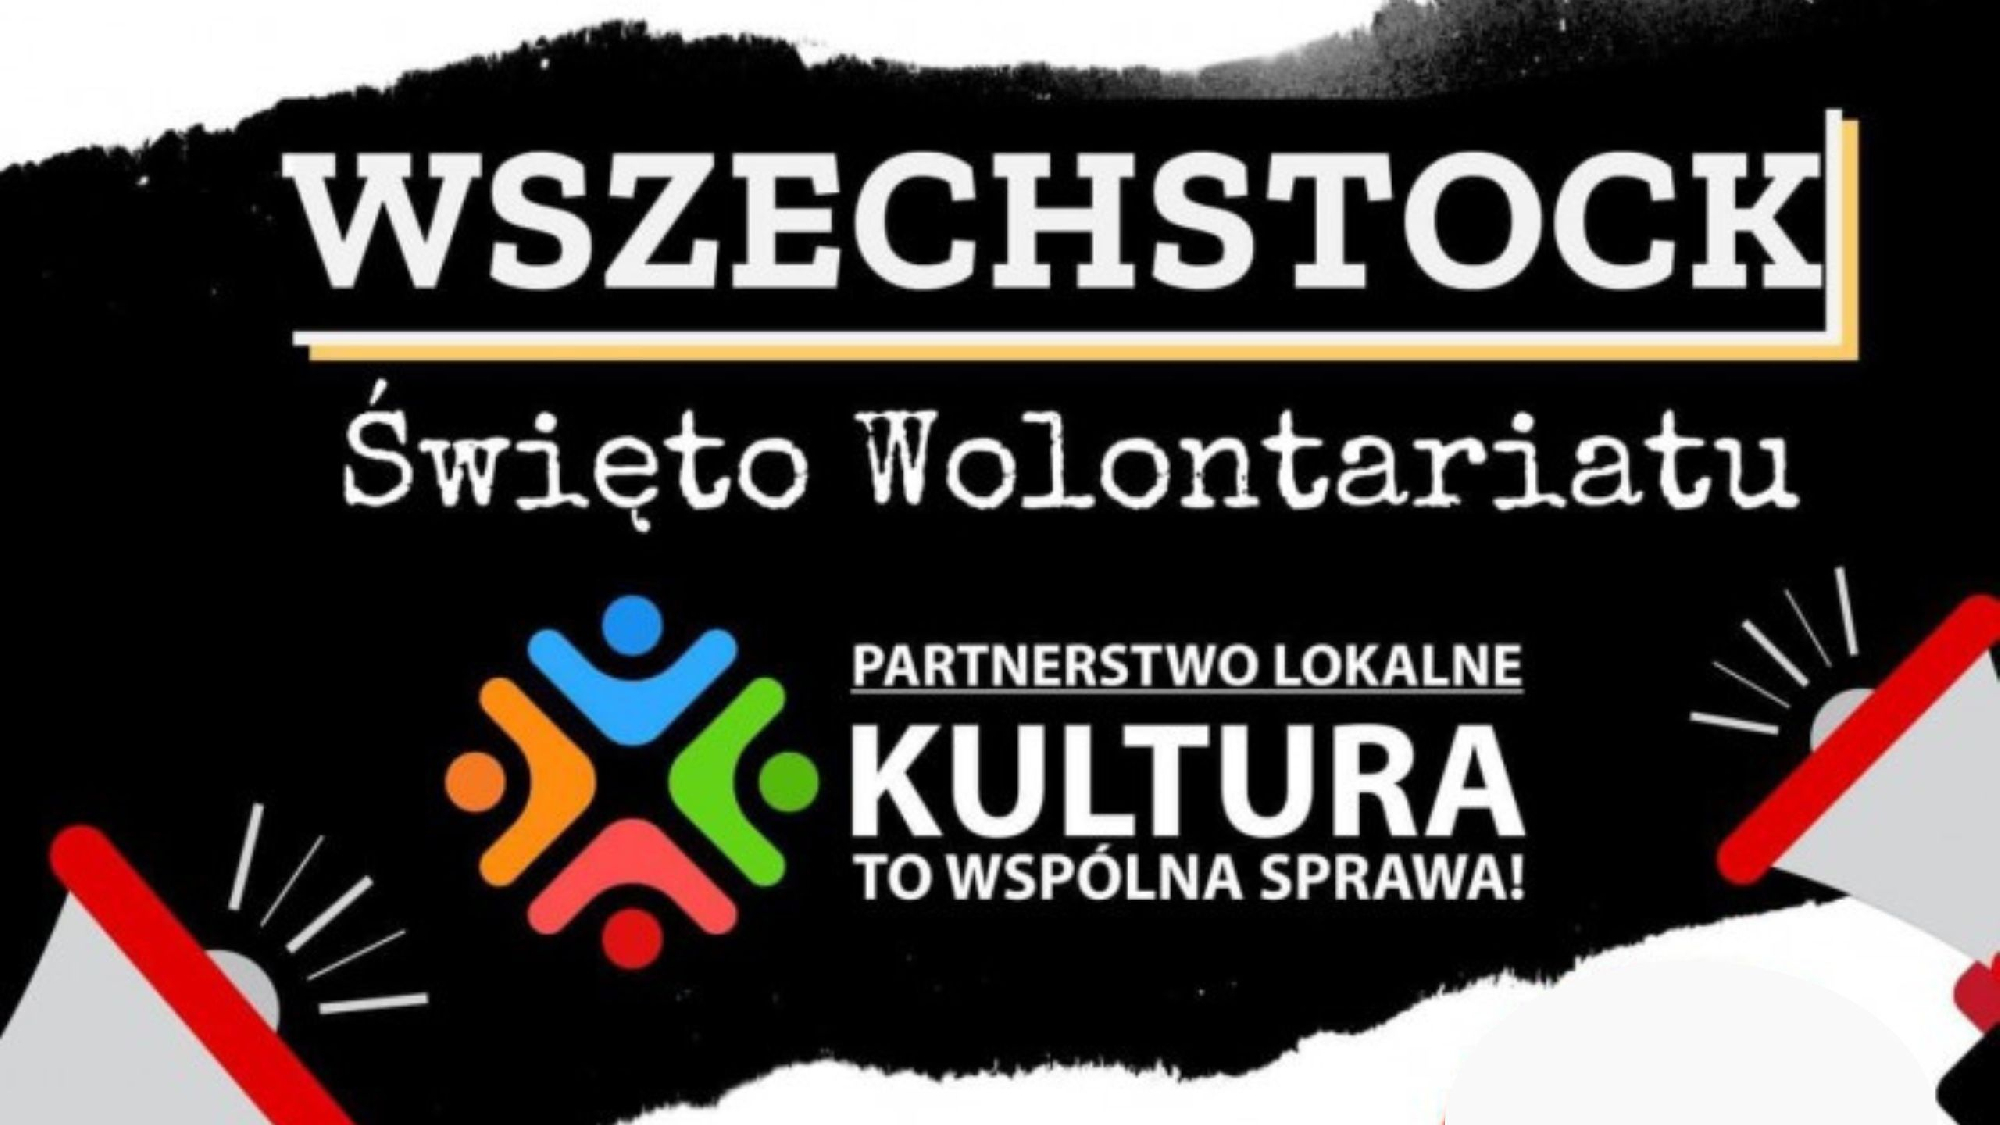 Wszechstock - święto wolontariatu